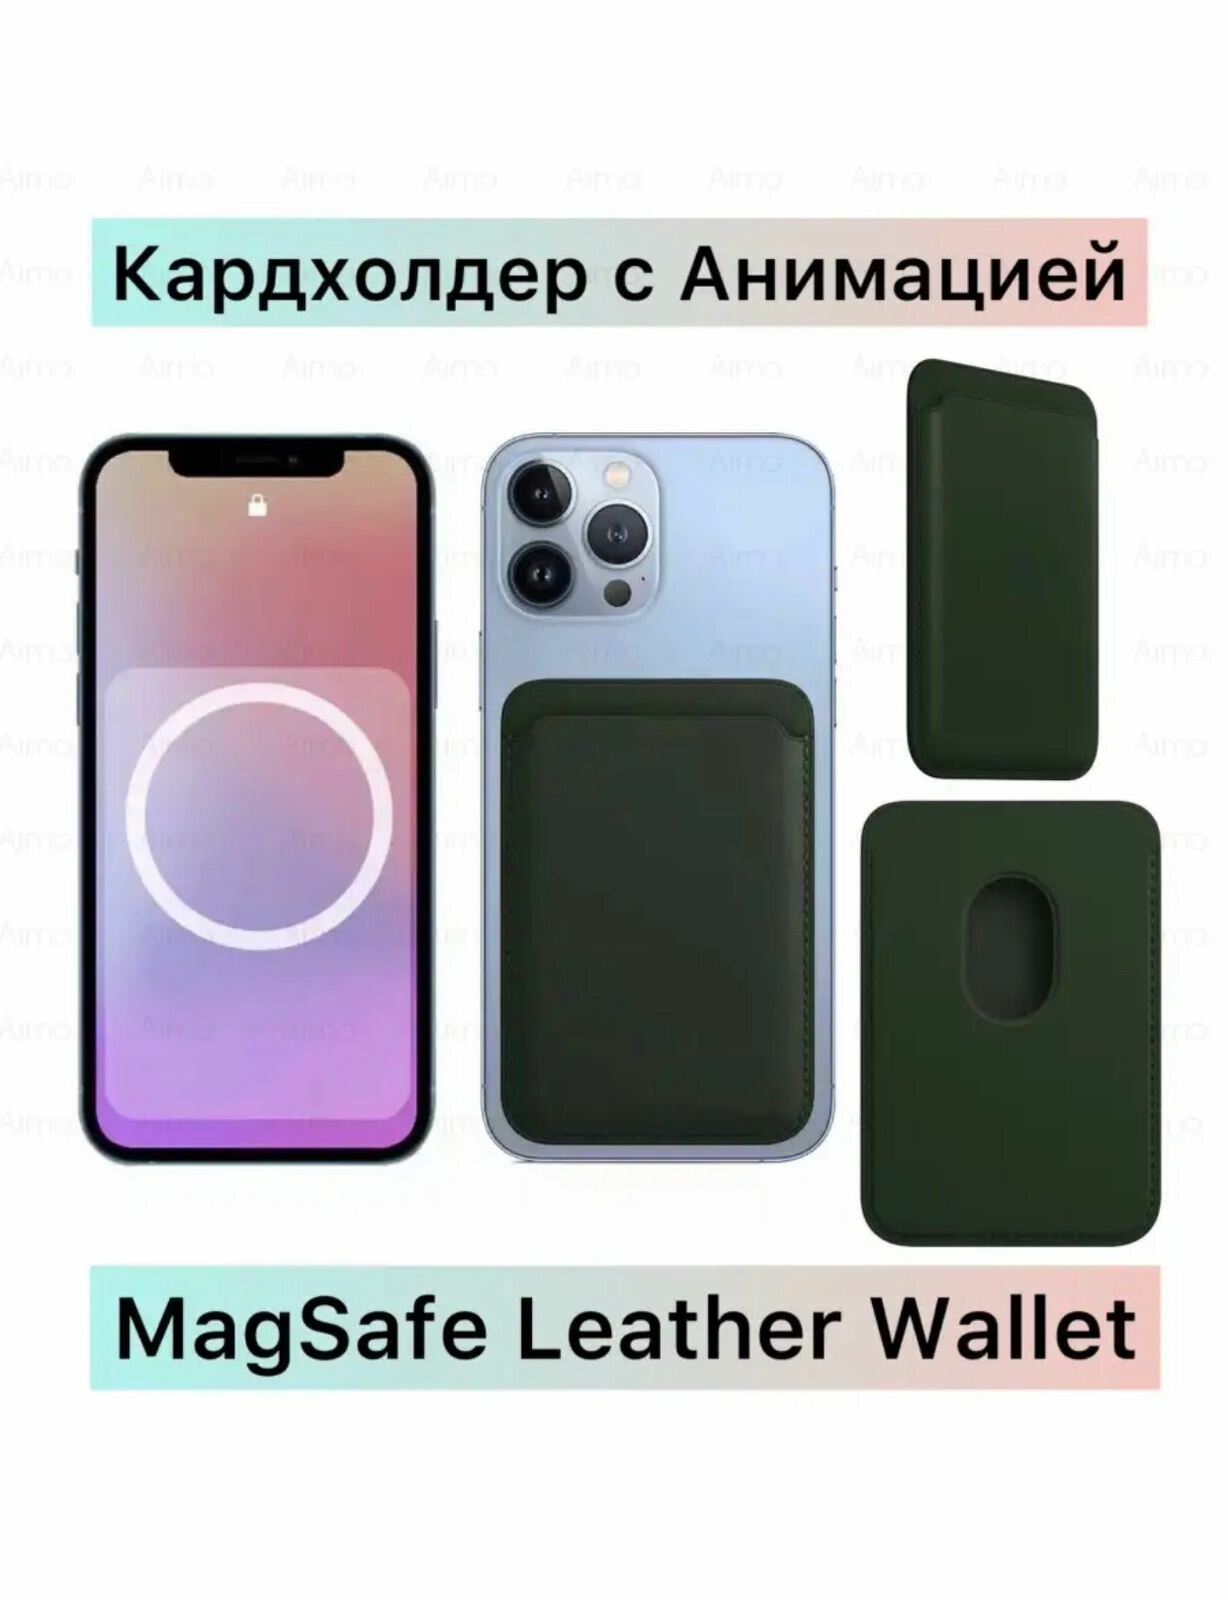 Картхолдер Magsafe Wallet для iPhone / Визитница на телефон / Кошелек для карт / зеленый